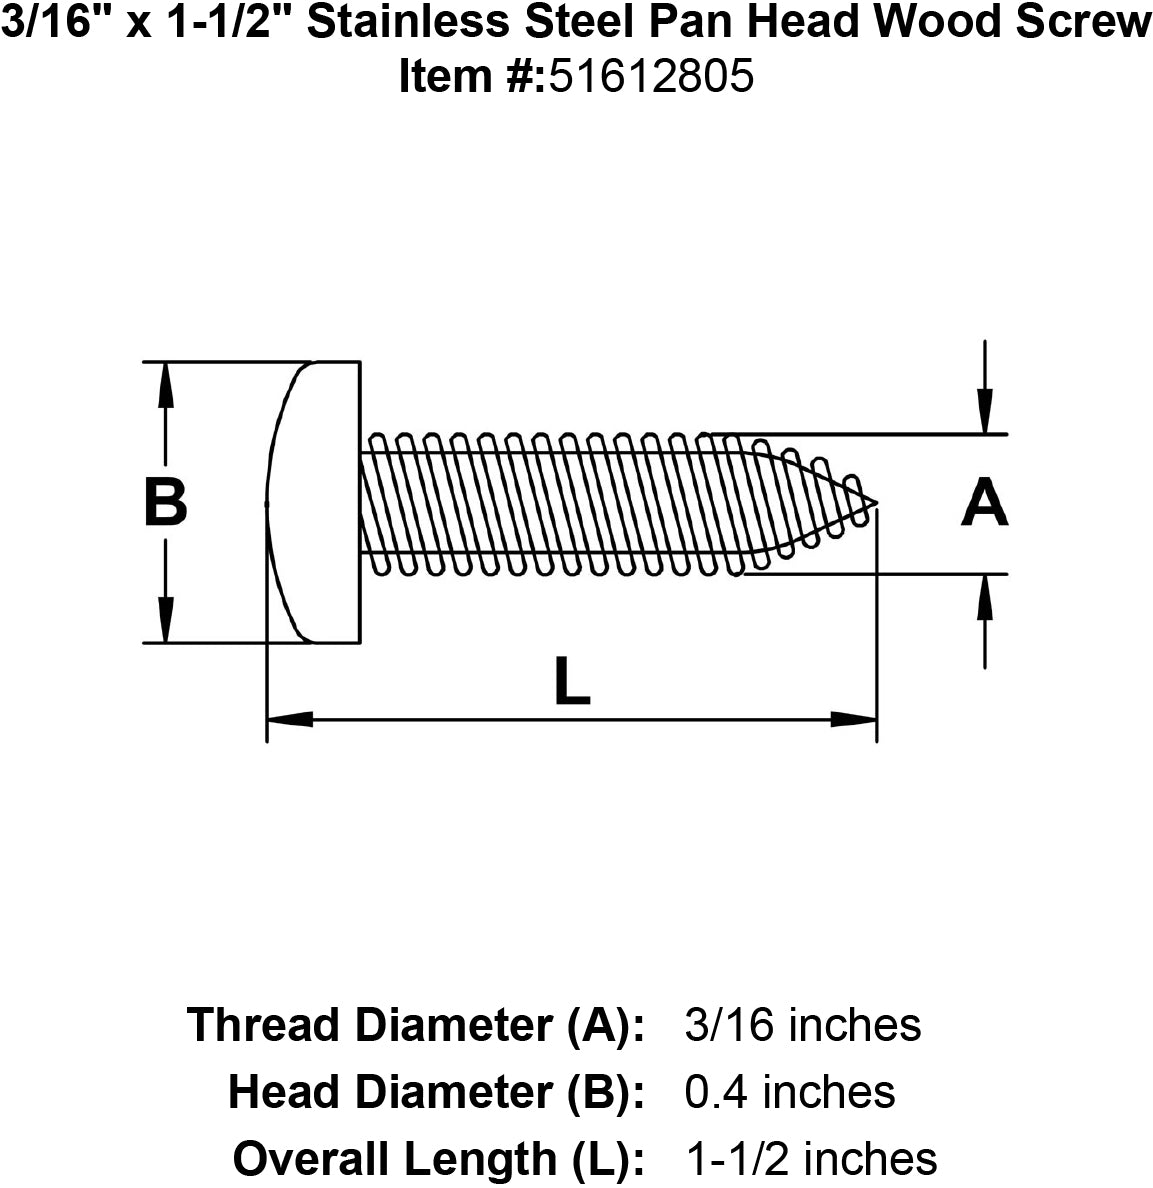 Stainless Steel Pan Head Wood Screw